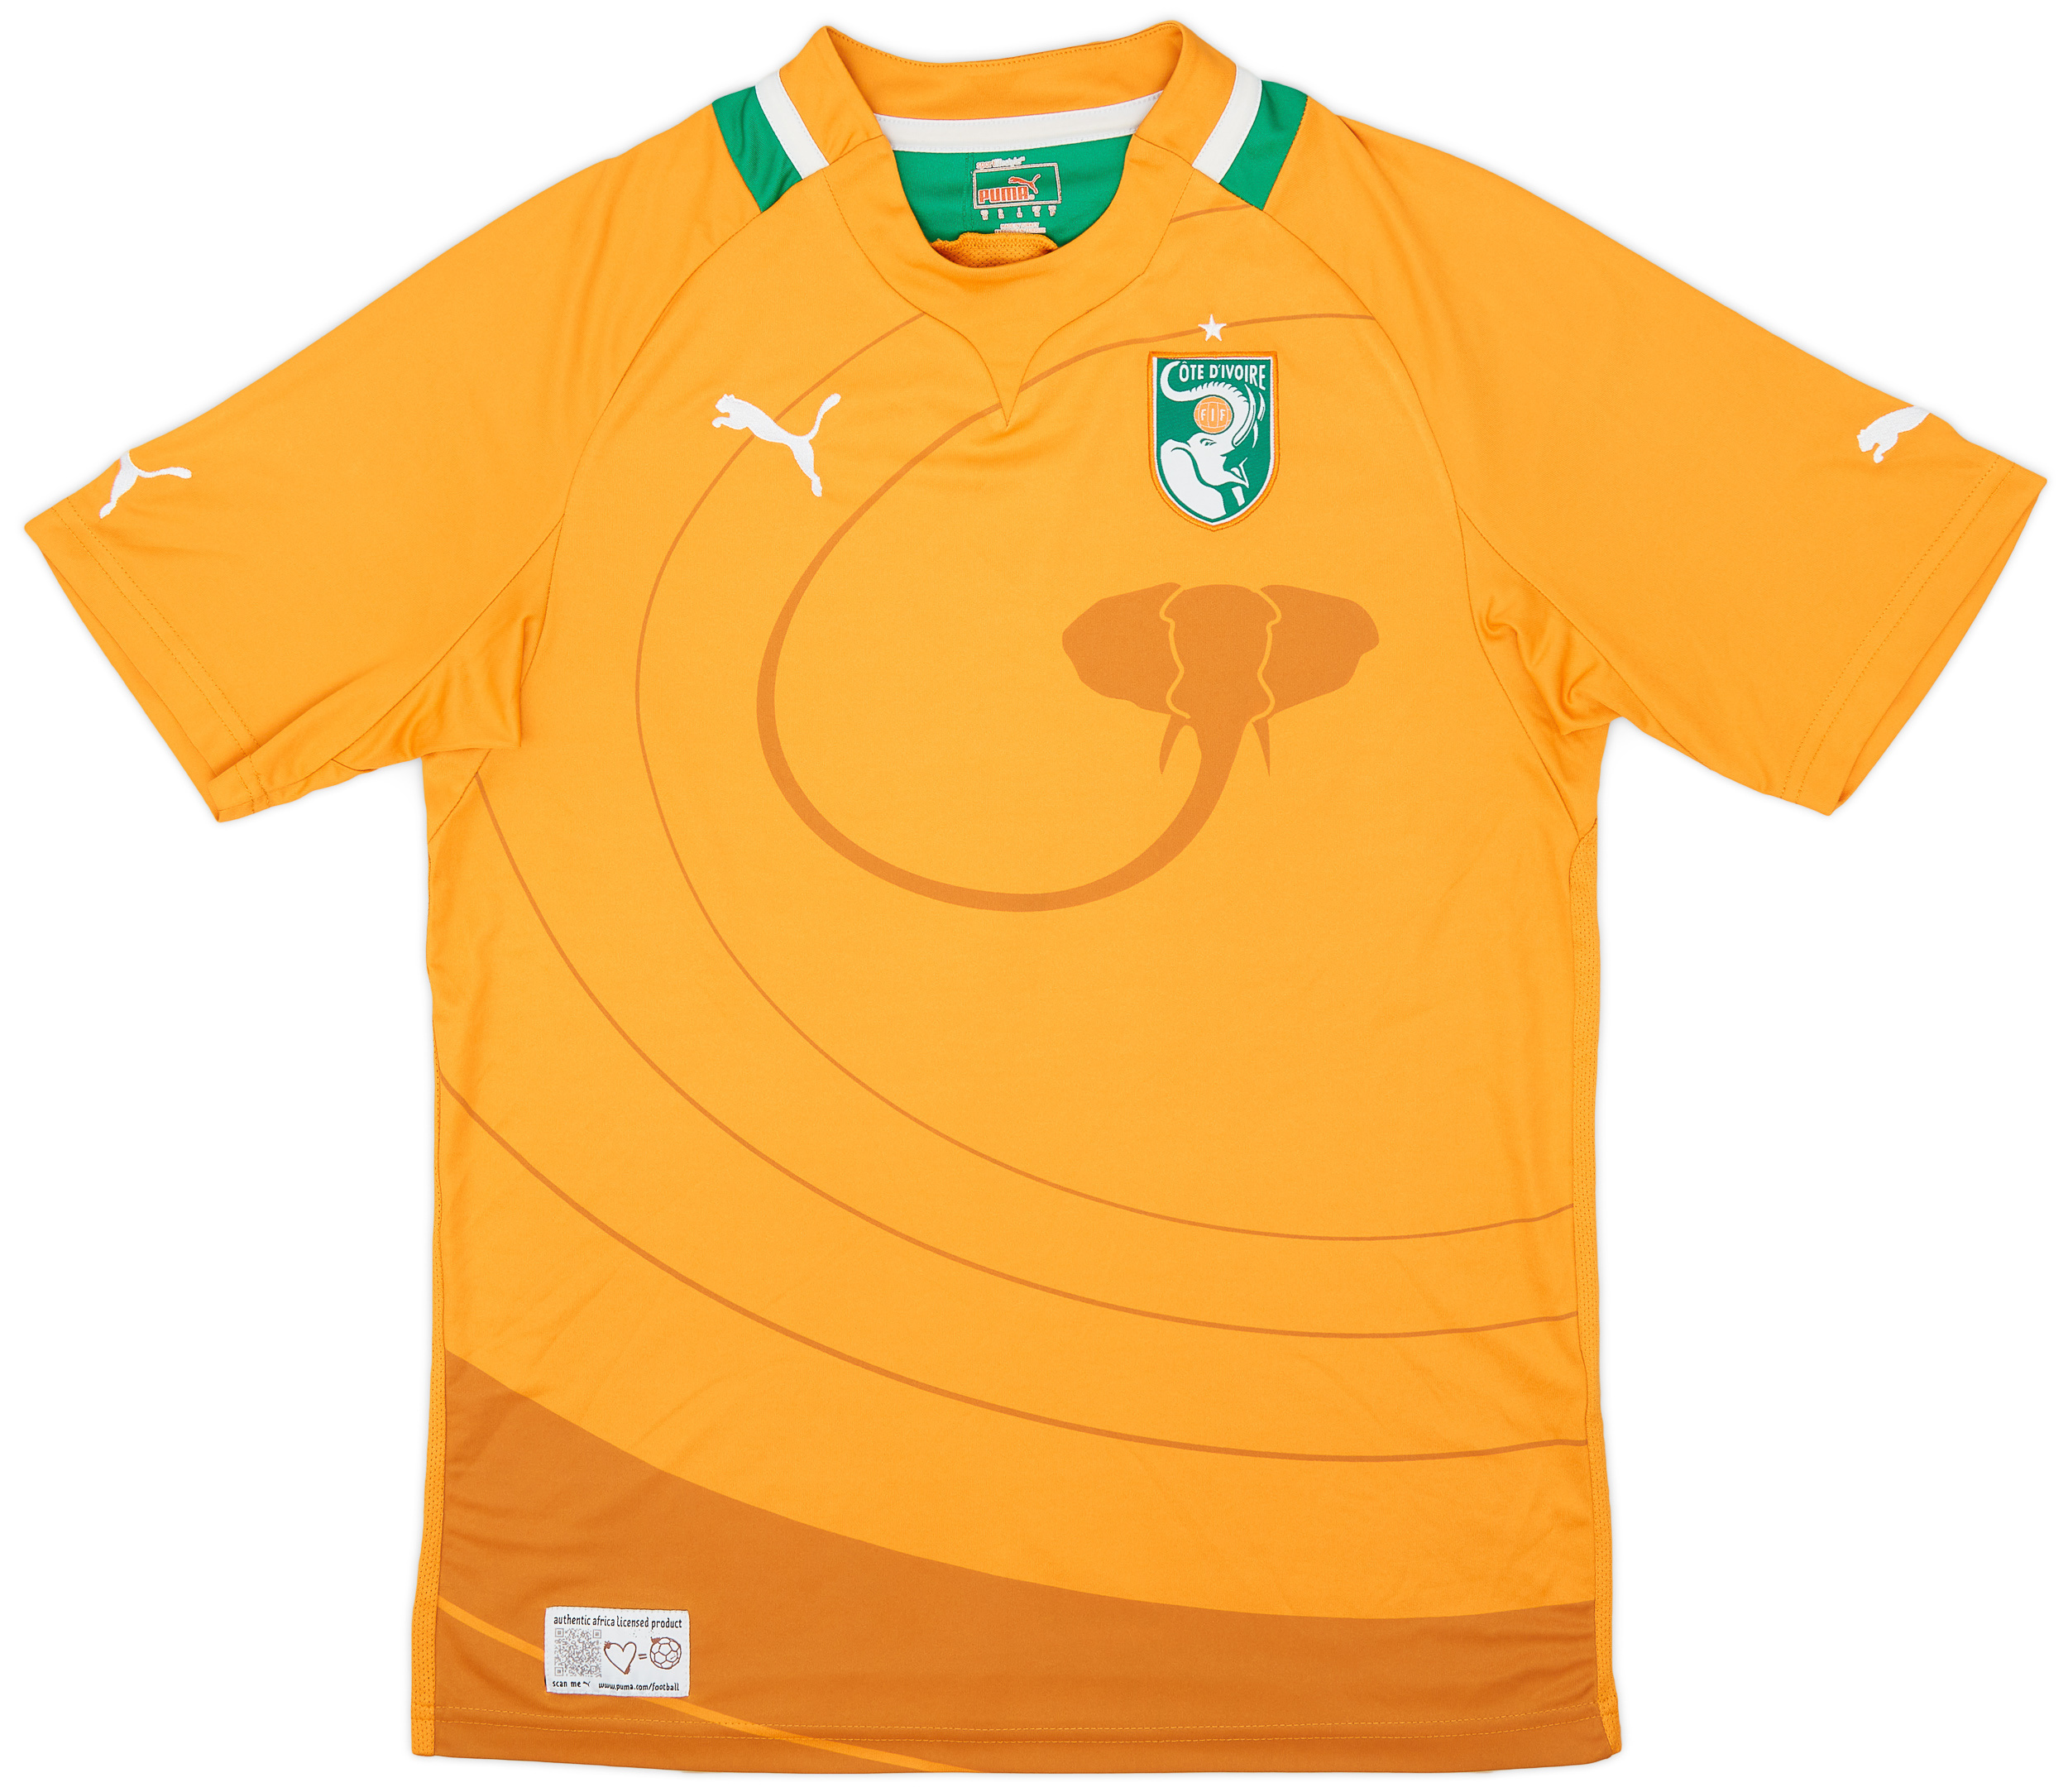 2011-13 Ivory Coast Home Shirt - 8/10 - ()